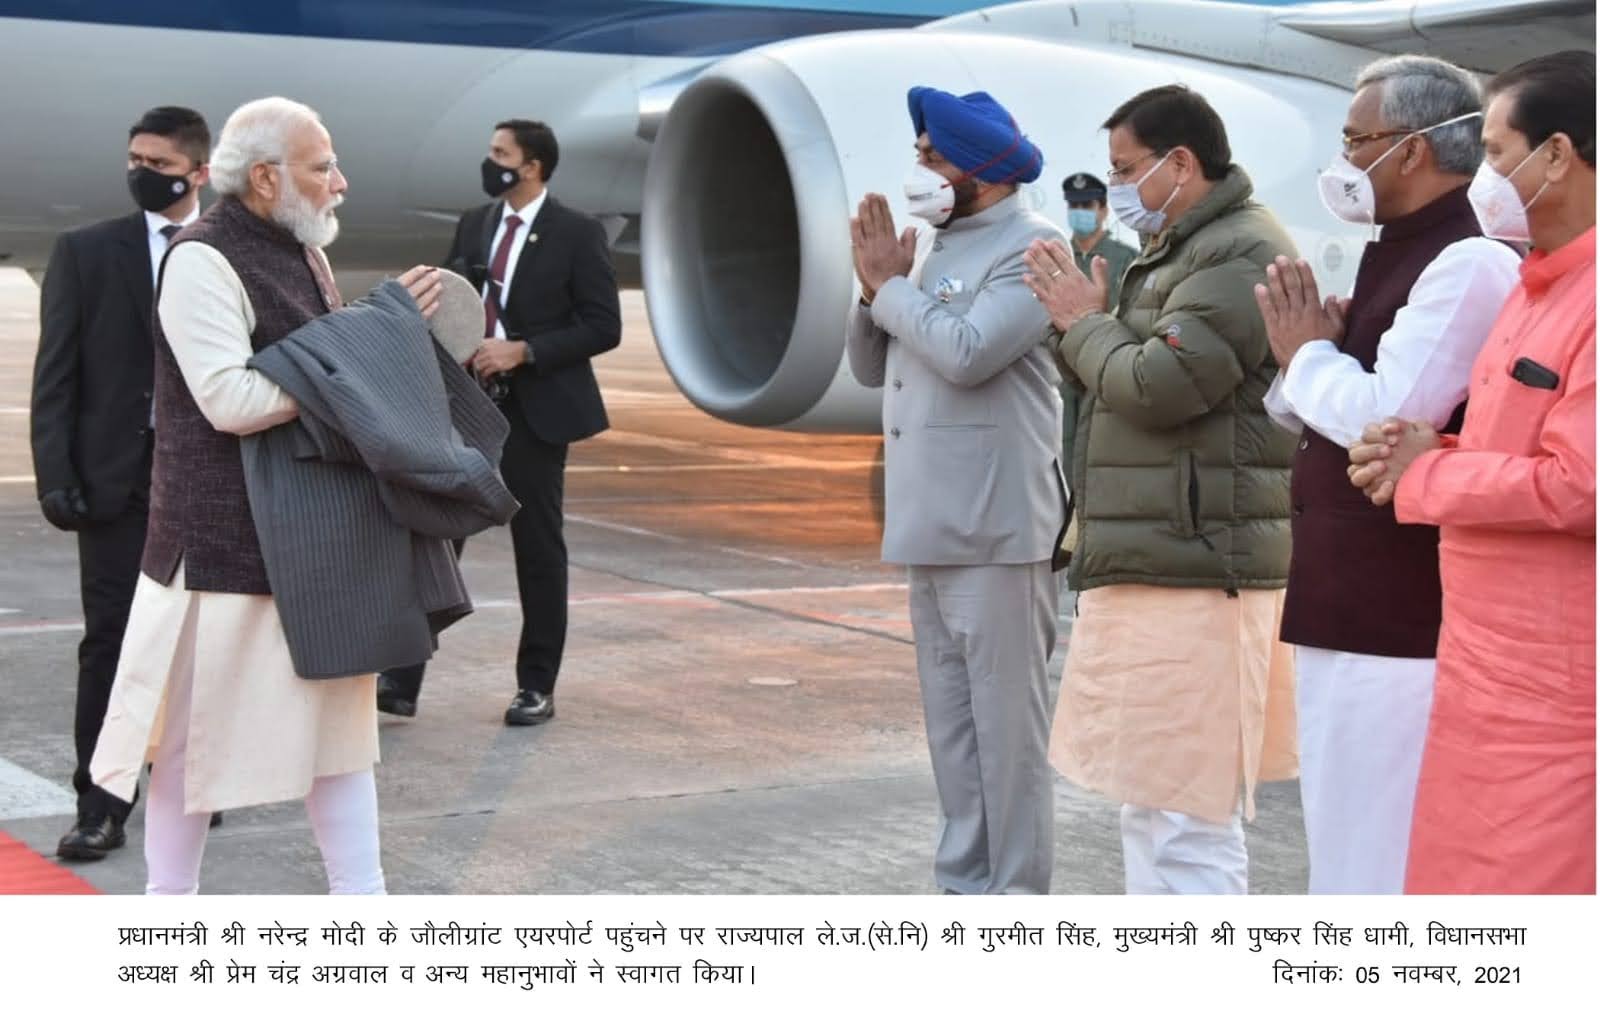 ब्रेकिंग न्यूज़: प्रधानमंत्री मोदी पहुंचे उत्तराखंड, सीएम धामी वह राज्यपाल ने किया  स्वागत